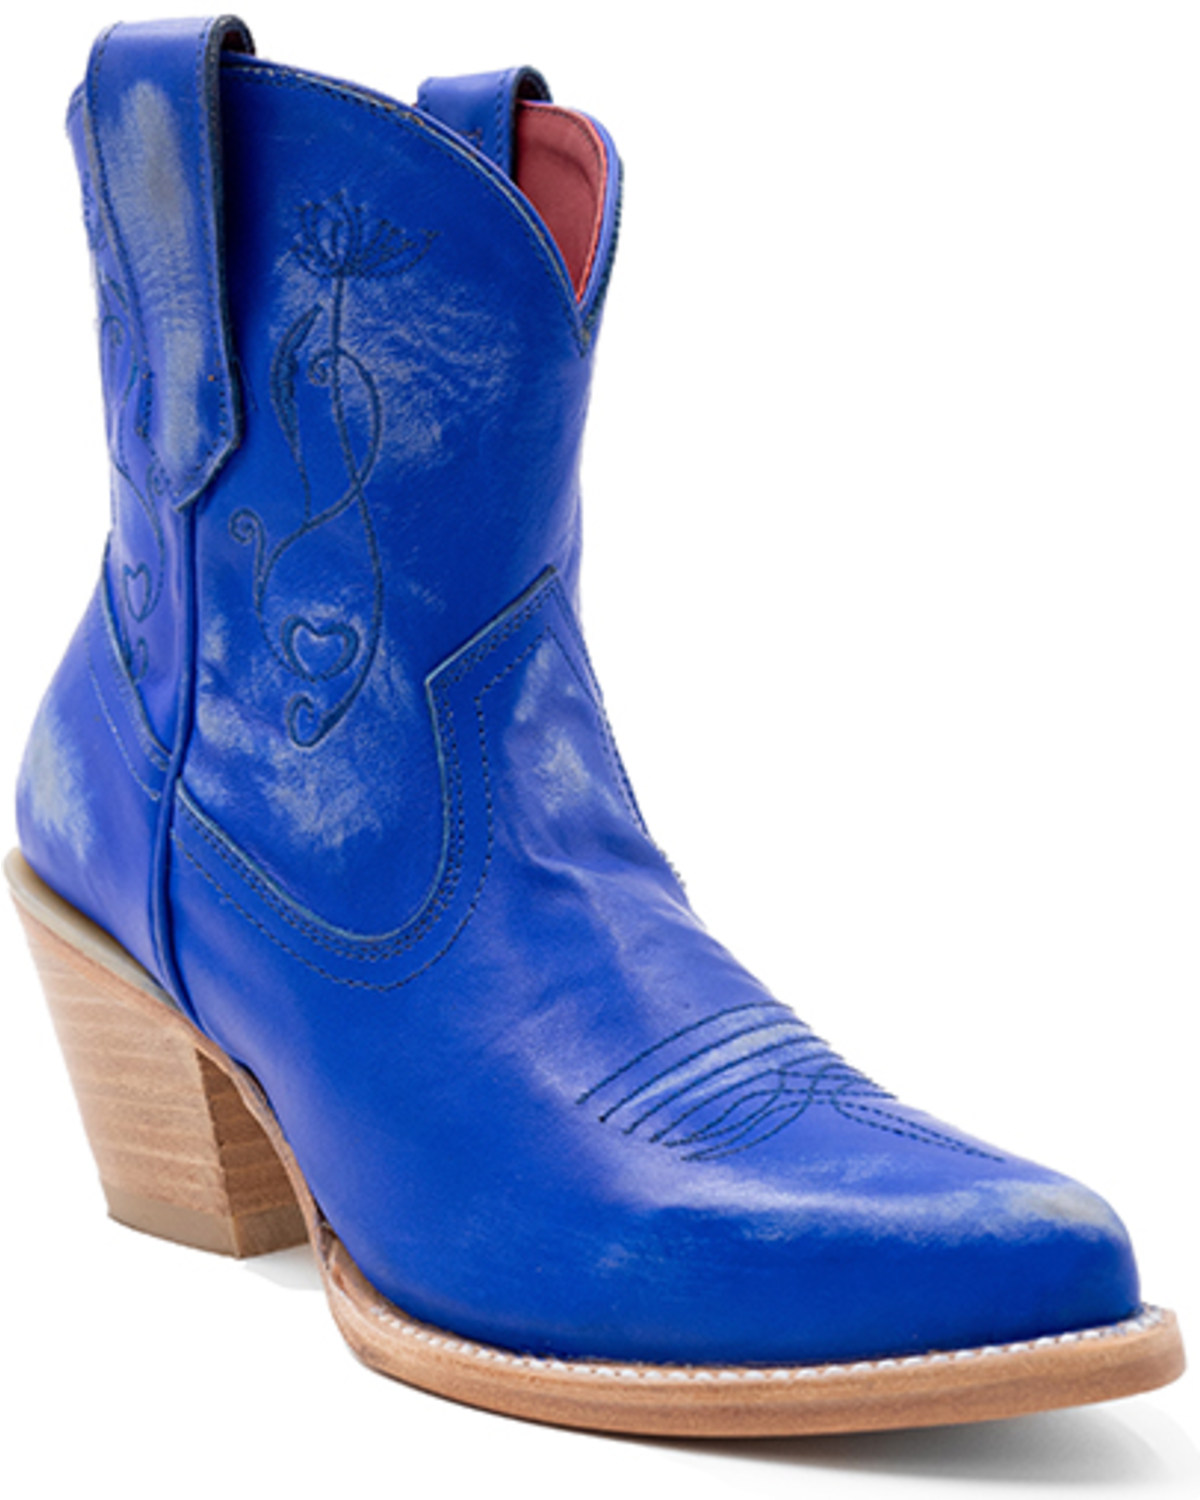 Ferrini Women's Pixie Western Boots